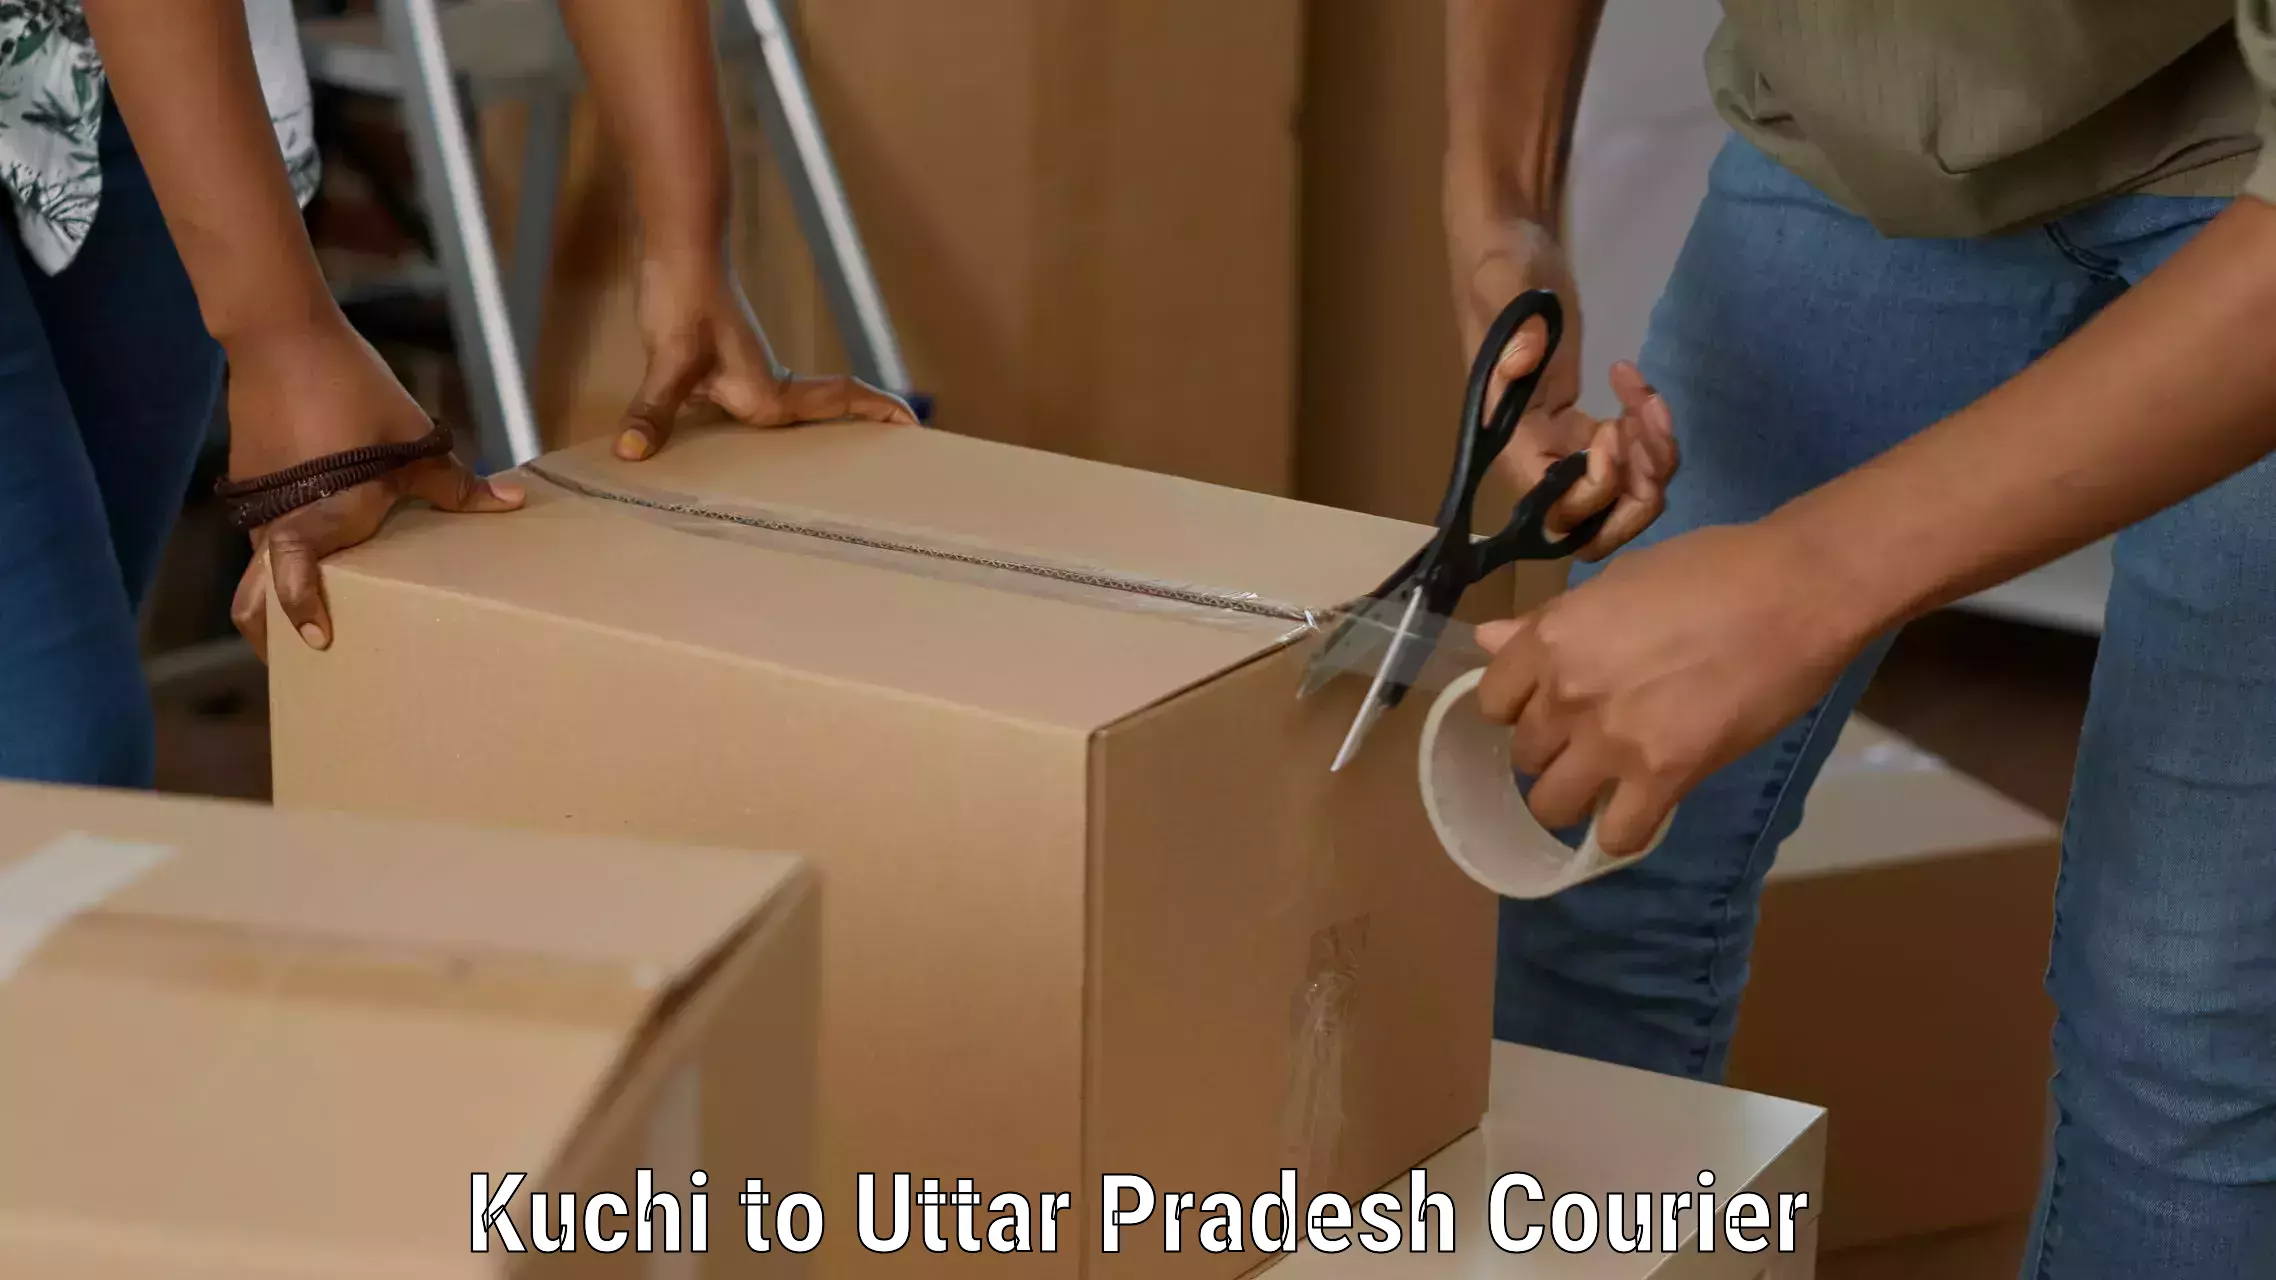 Premium courier solutions Kuchi to Khaga